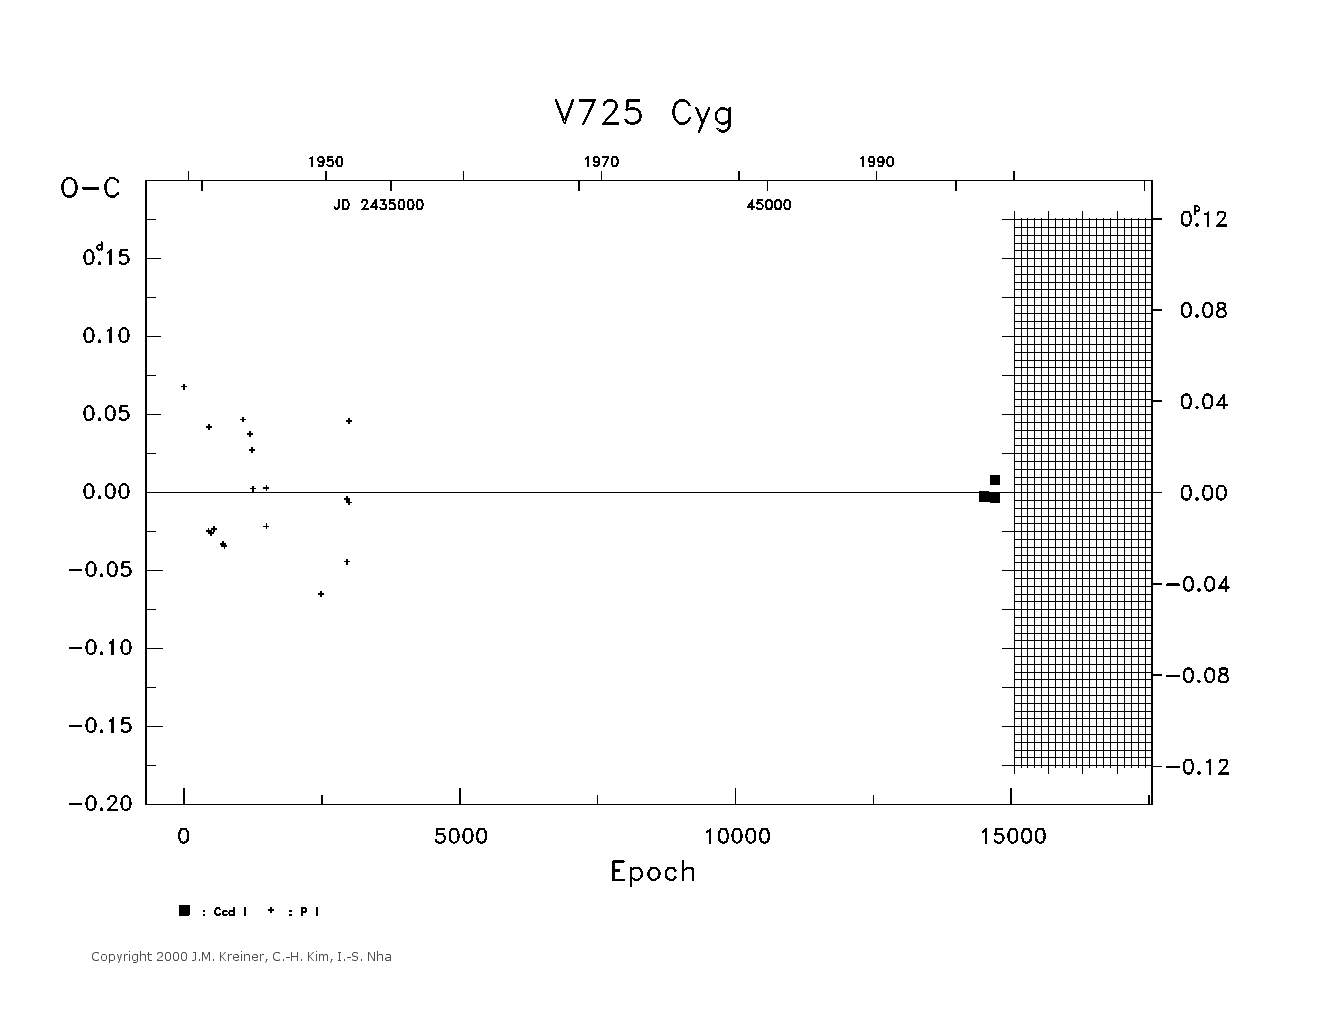 [IMAGE: large V725 CYG O-C diagram]